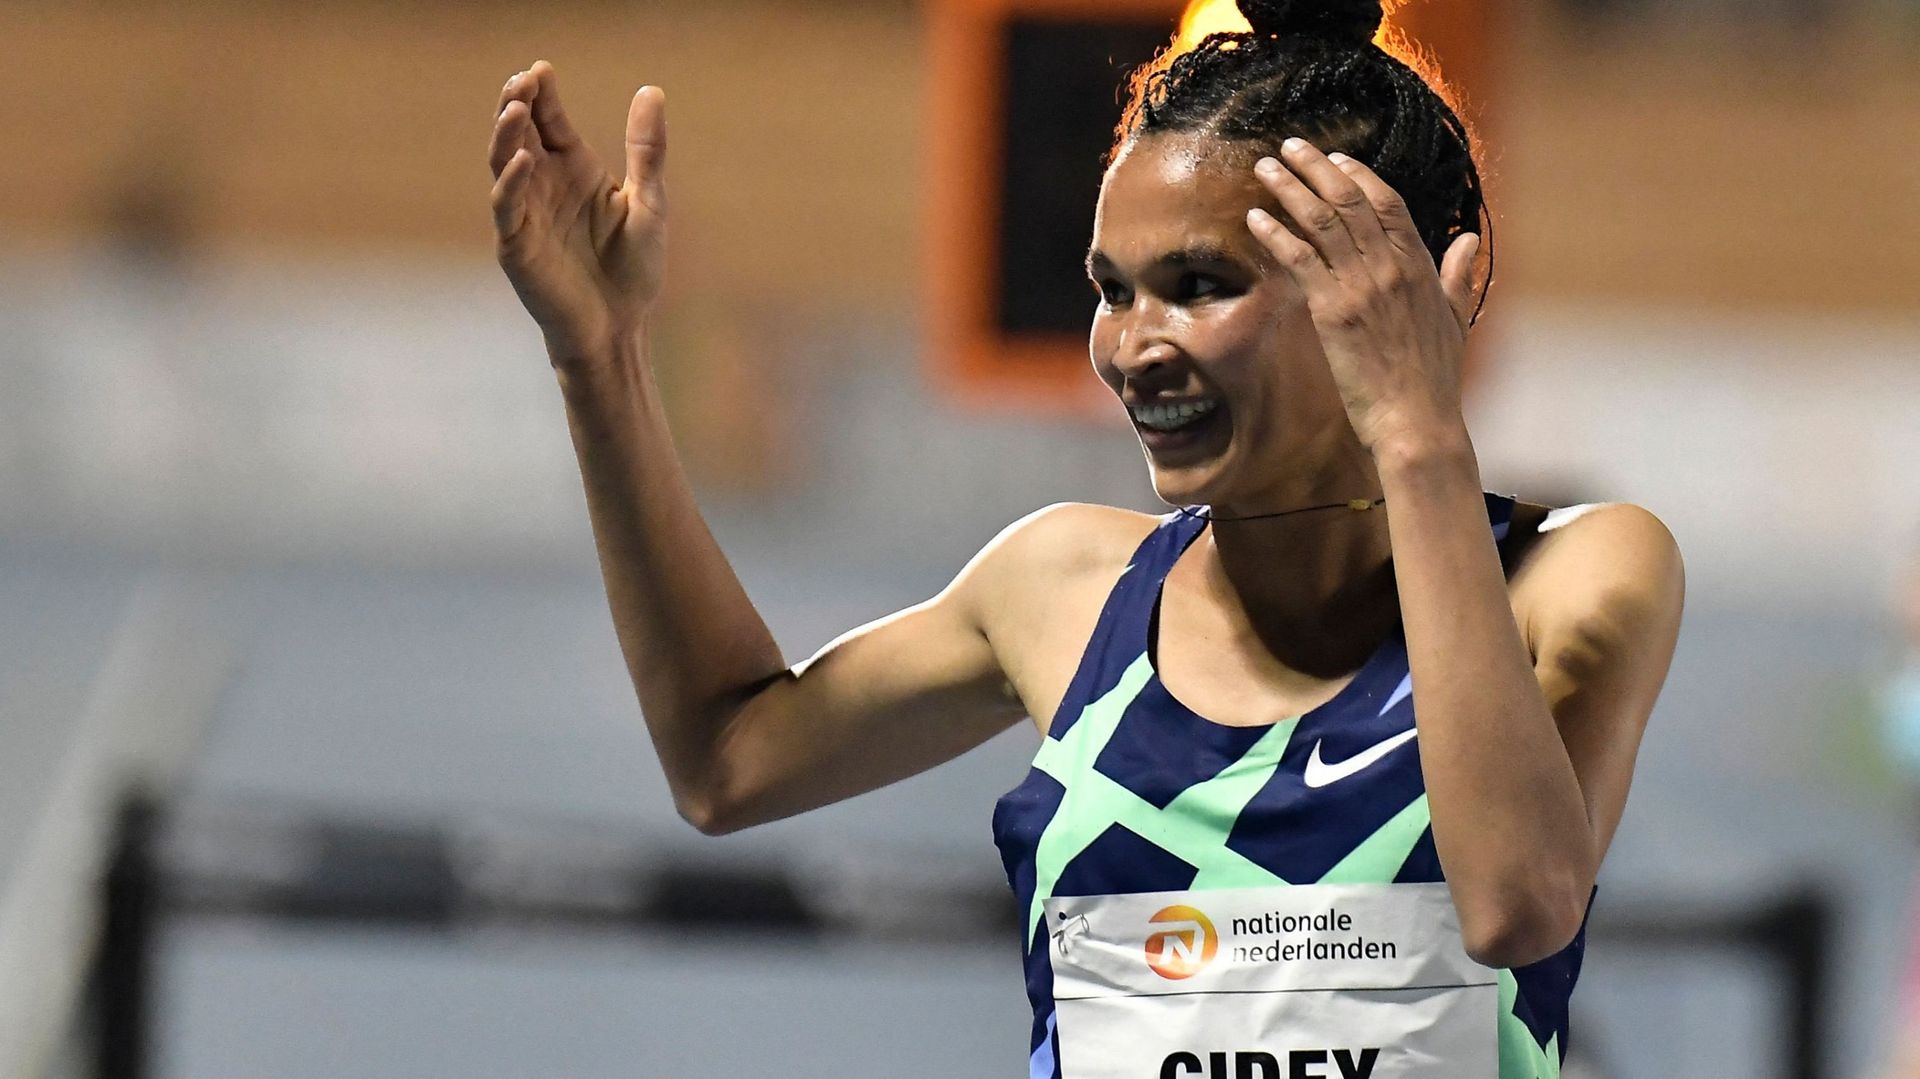 L’Ethiopienne Letesenbet Gidey a battu mardi le record du monde du 10.000 m lors des sélections olympiques éthiopiennes disputées à Hengelo (Pays-Bas), effaçant le record établi il y a deux jours sur la même piste par la Néerlandaise Sifan Hassan.